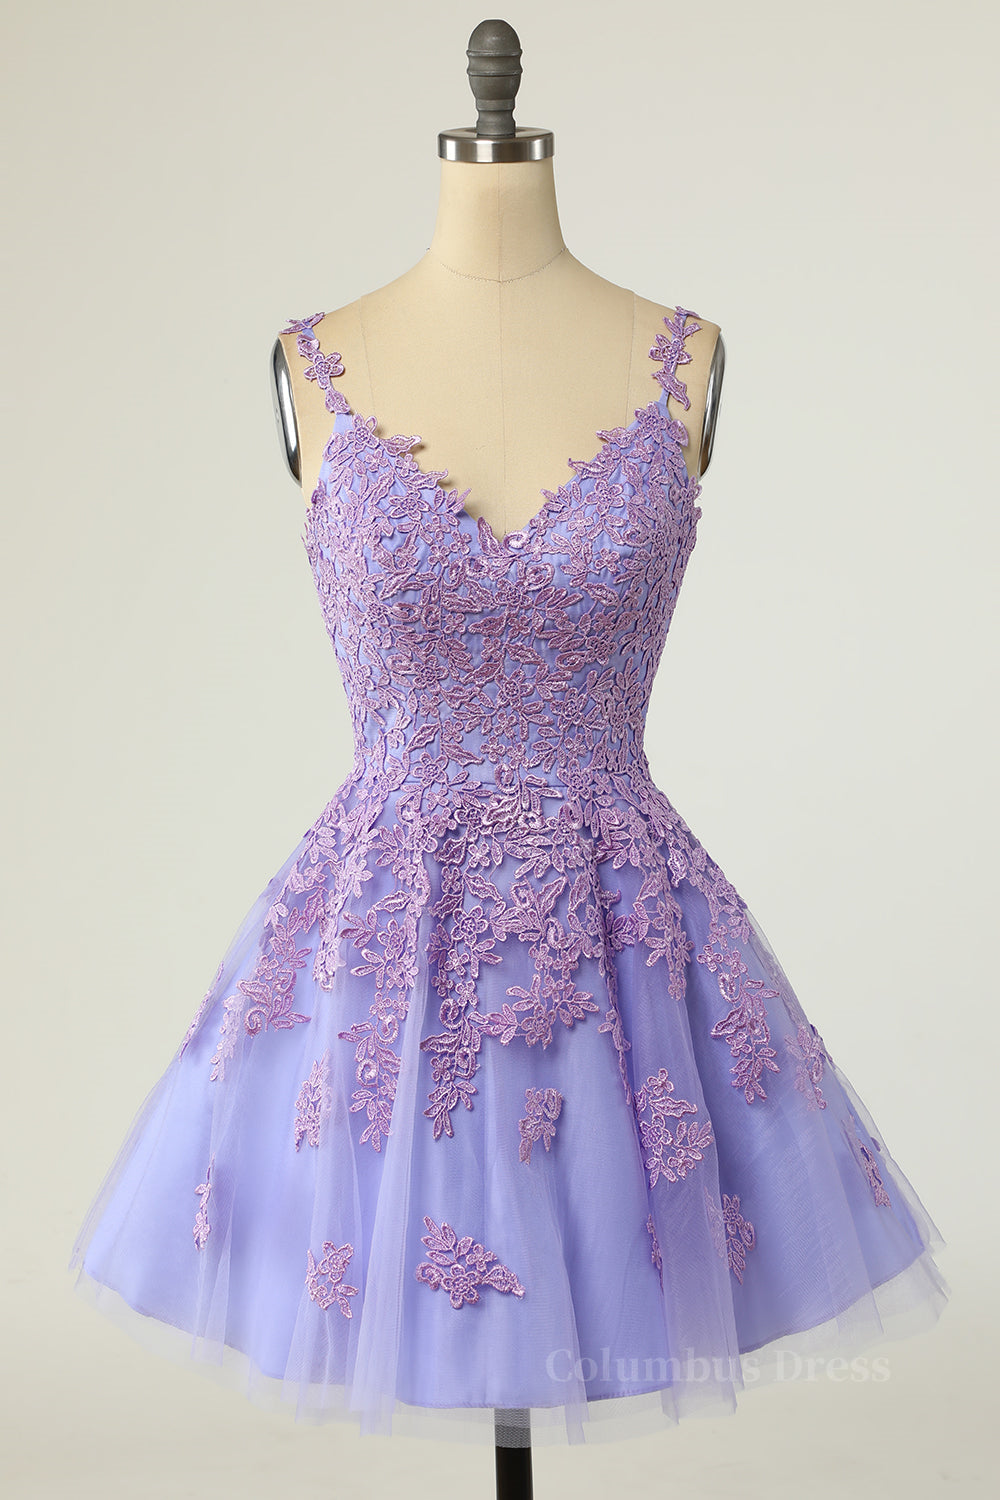 Lavender Lace Appliques Princess A-line Short Corset Prom Dress outfits, Bridesmaids Dresses Styles